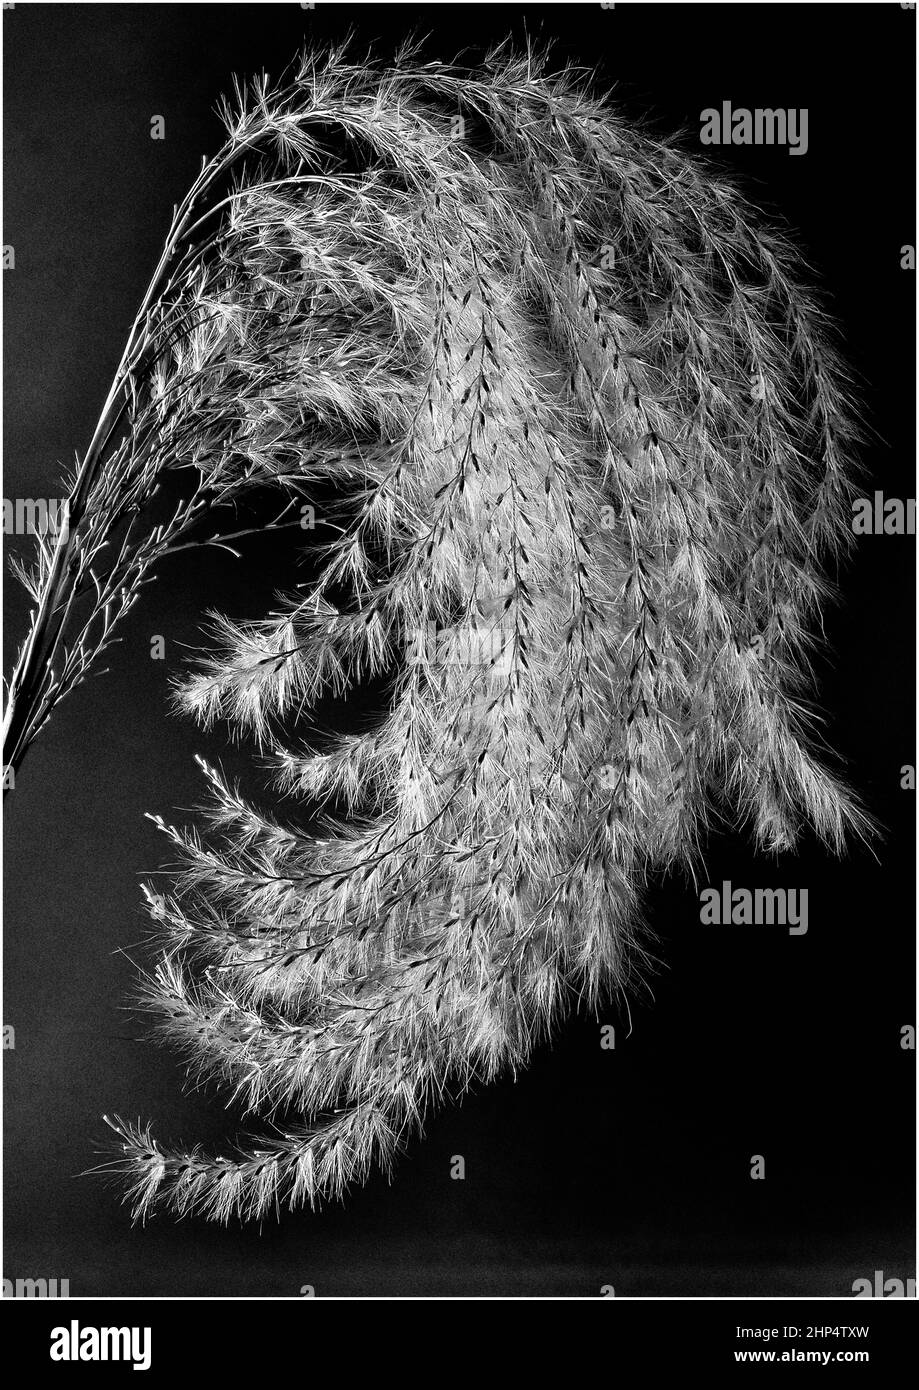 Miscanthus, gebräuchlicher Name: Eulalia oder Elefantengrassamen Kopf, fotografiert in Nahaufnahme, um Details zu zeigen. Stockfoto